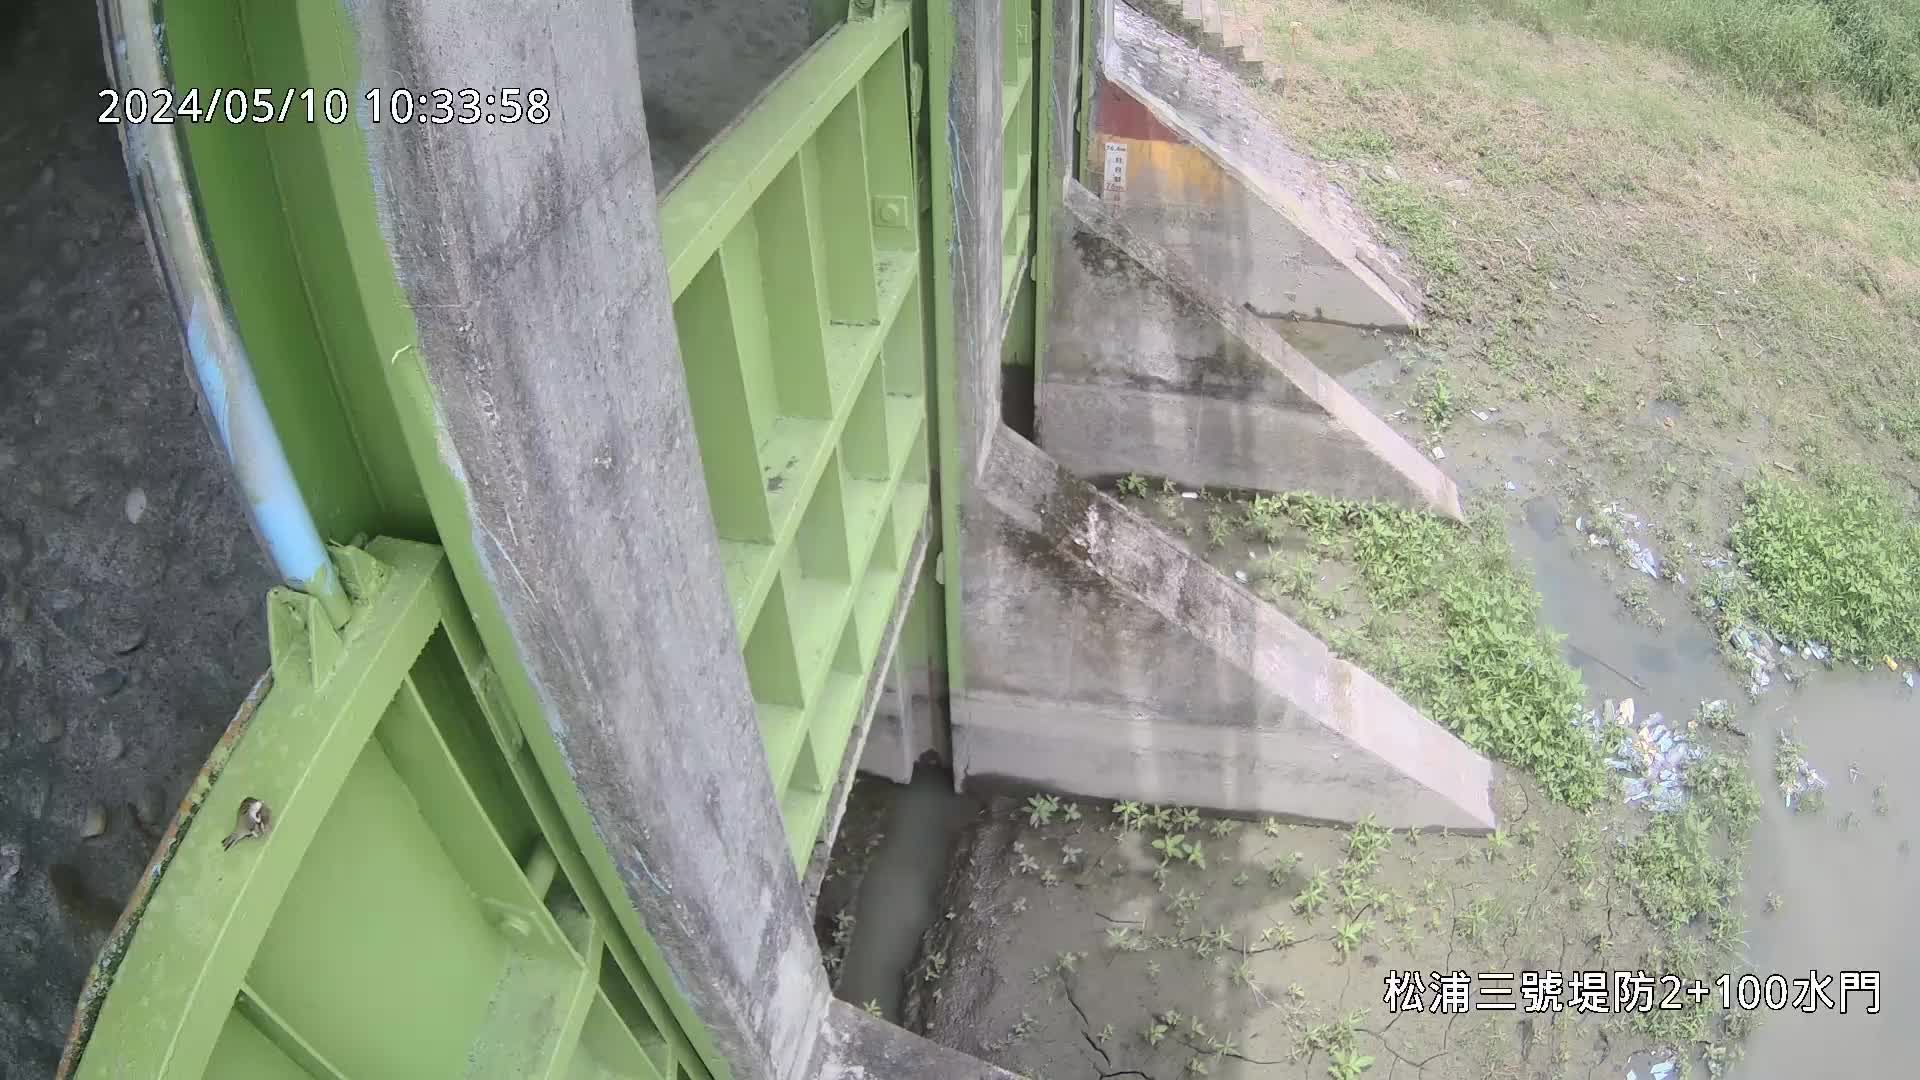 水利署水資源 九河局 松浦三號堤防 2K+100水門 槍型攝影機